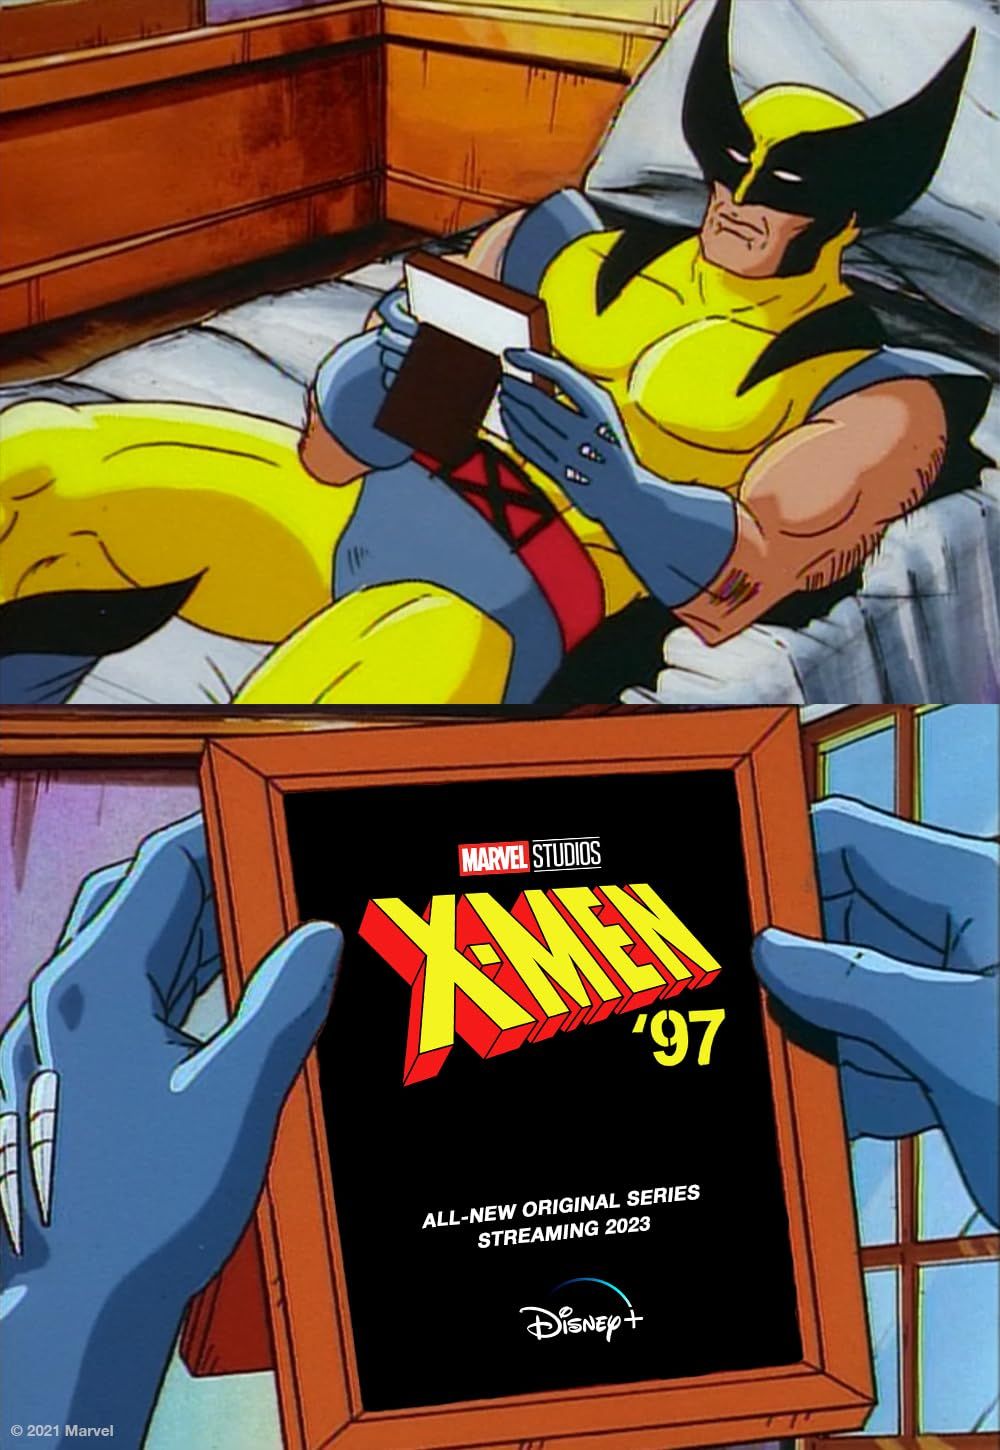 X-Men 97 (2024) Season 1 English (Episode 01-02) TV Series download full movie